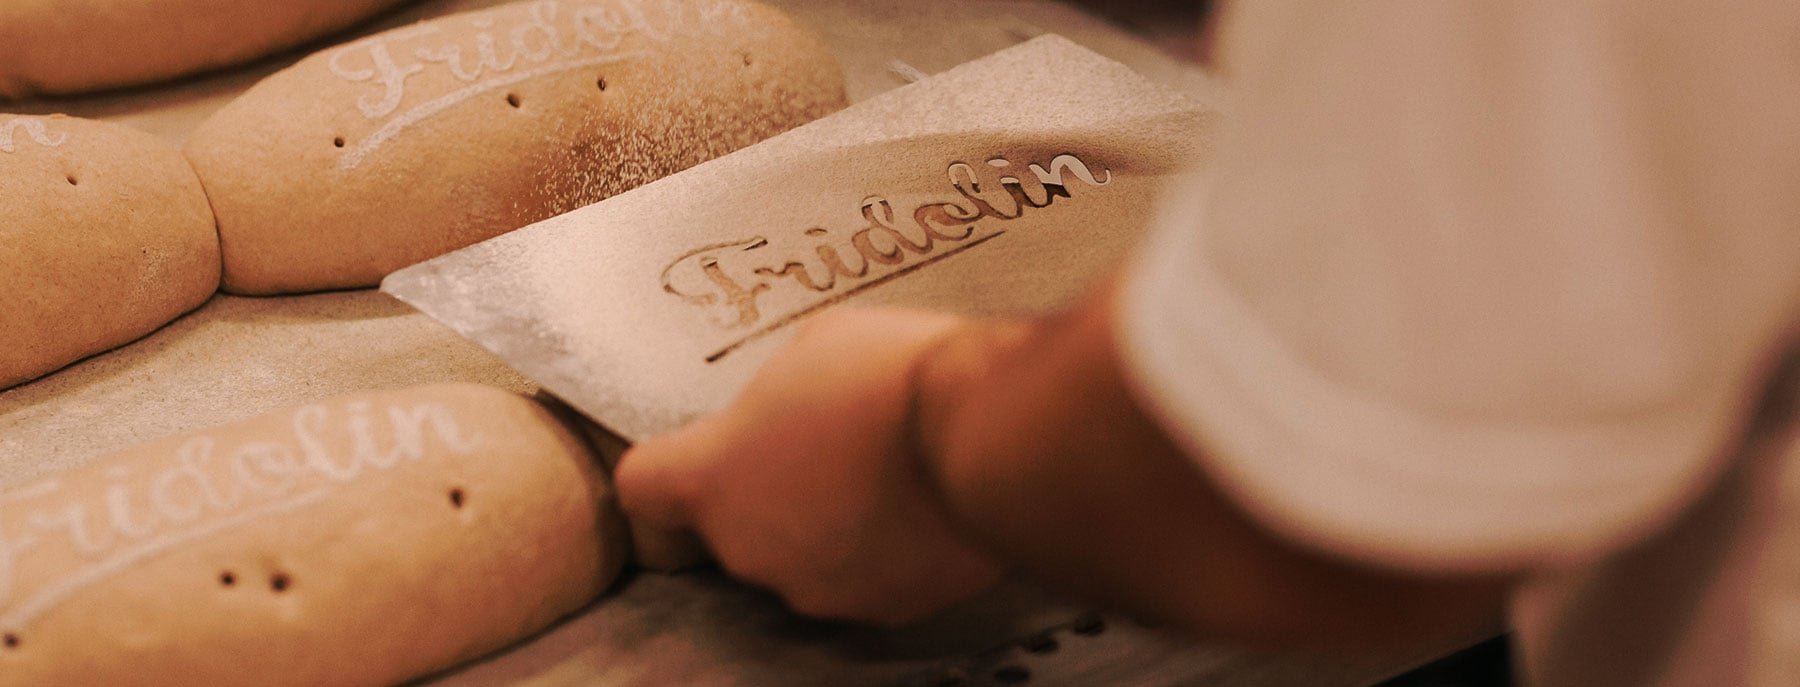 Ein Bäcker schreibt mit einer Schablone und Mehl den Namen Fridolin auf Brote